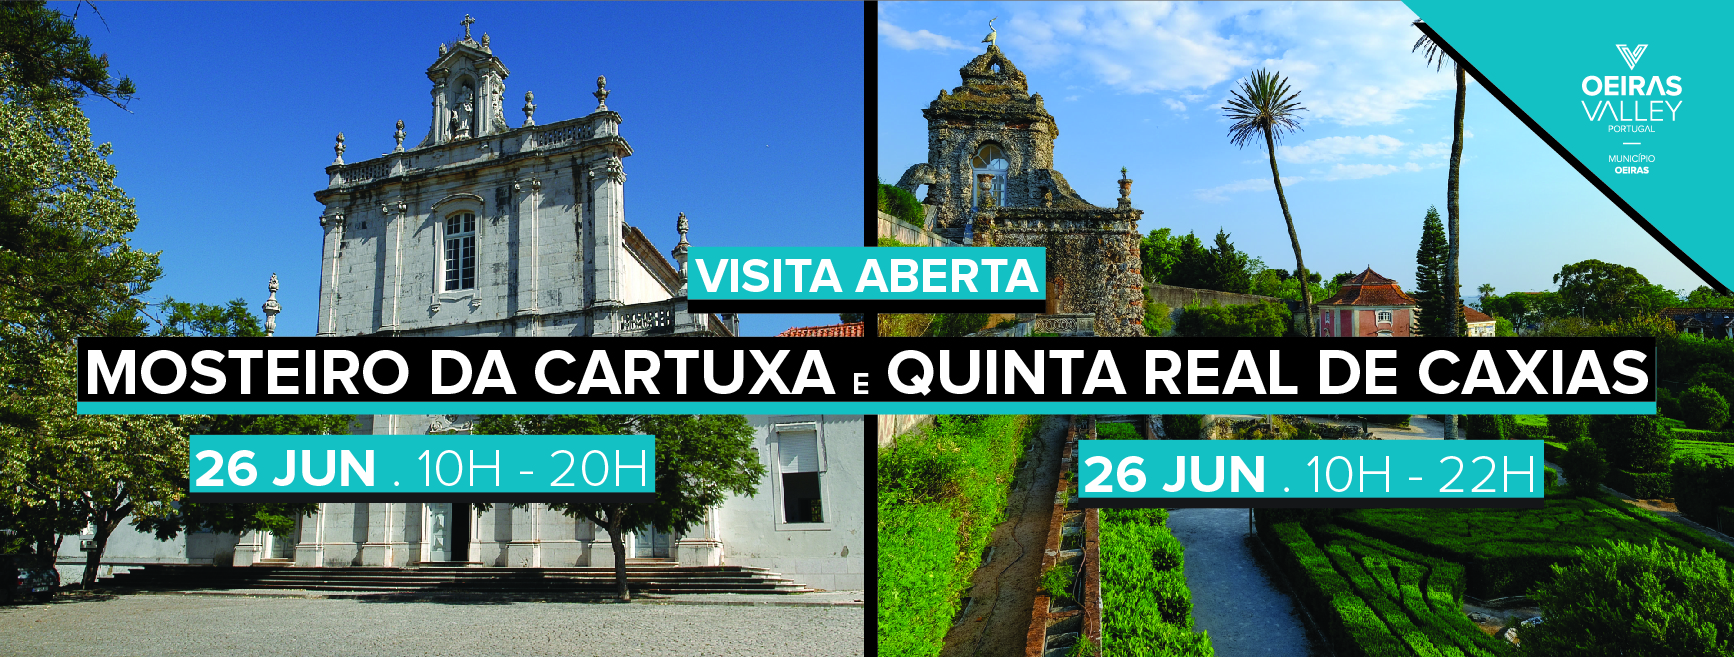 Mosteiro da Cartuxa e a Quinta Real de Caxias